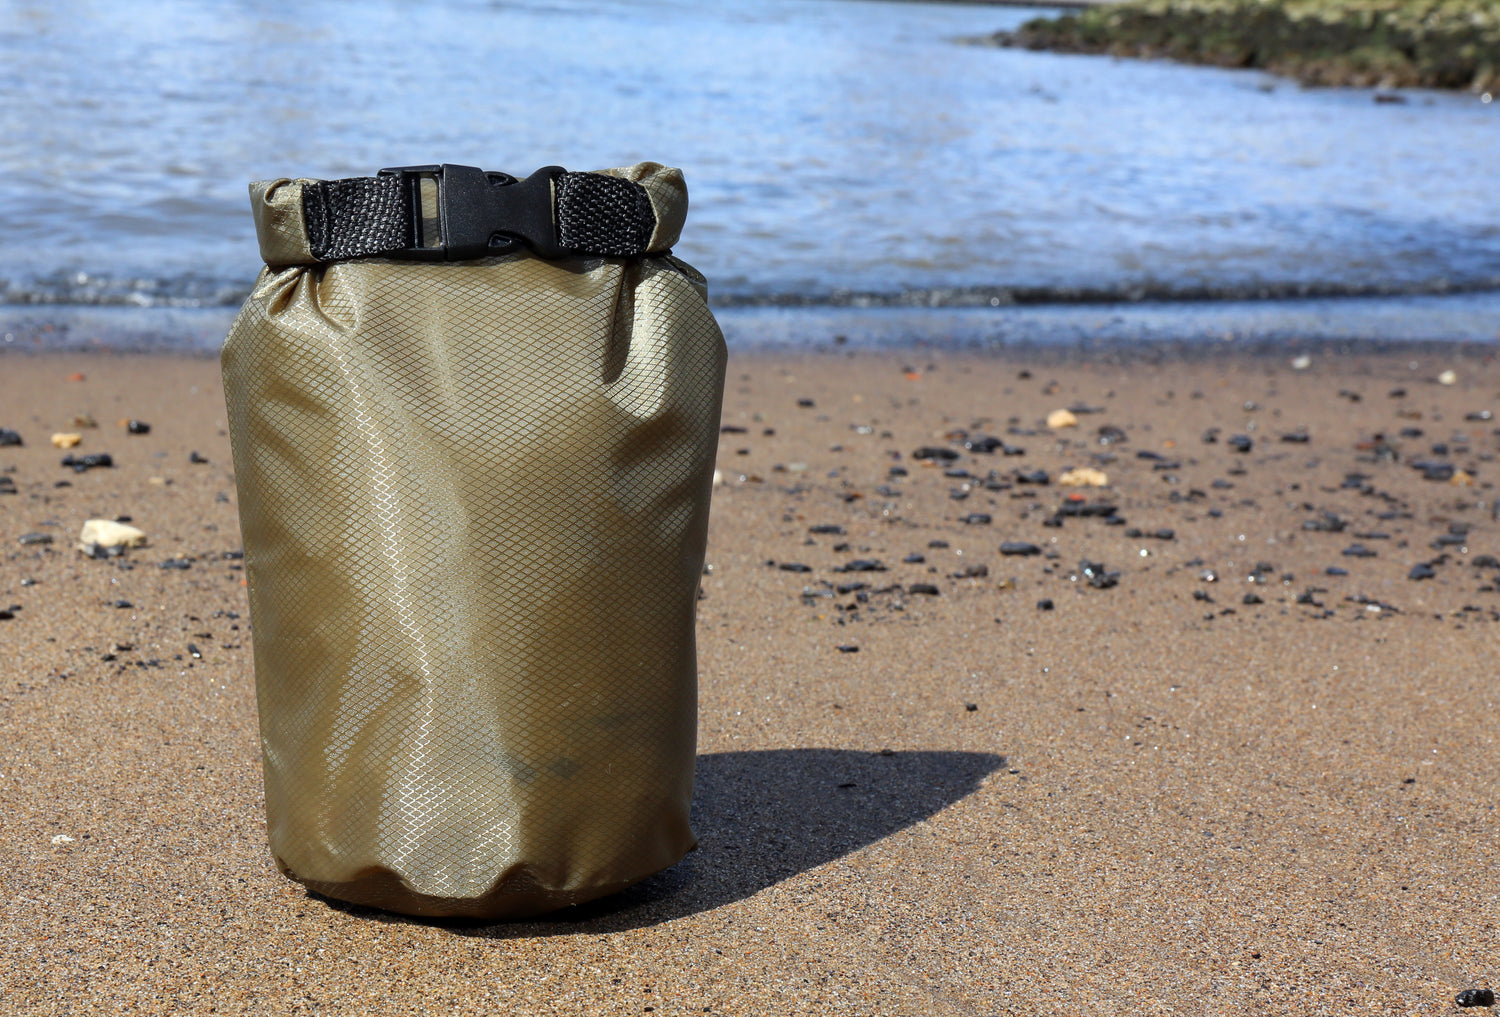 Army Green Waterproof Bag